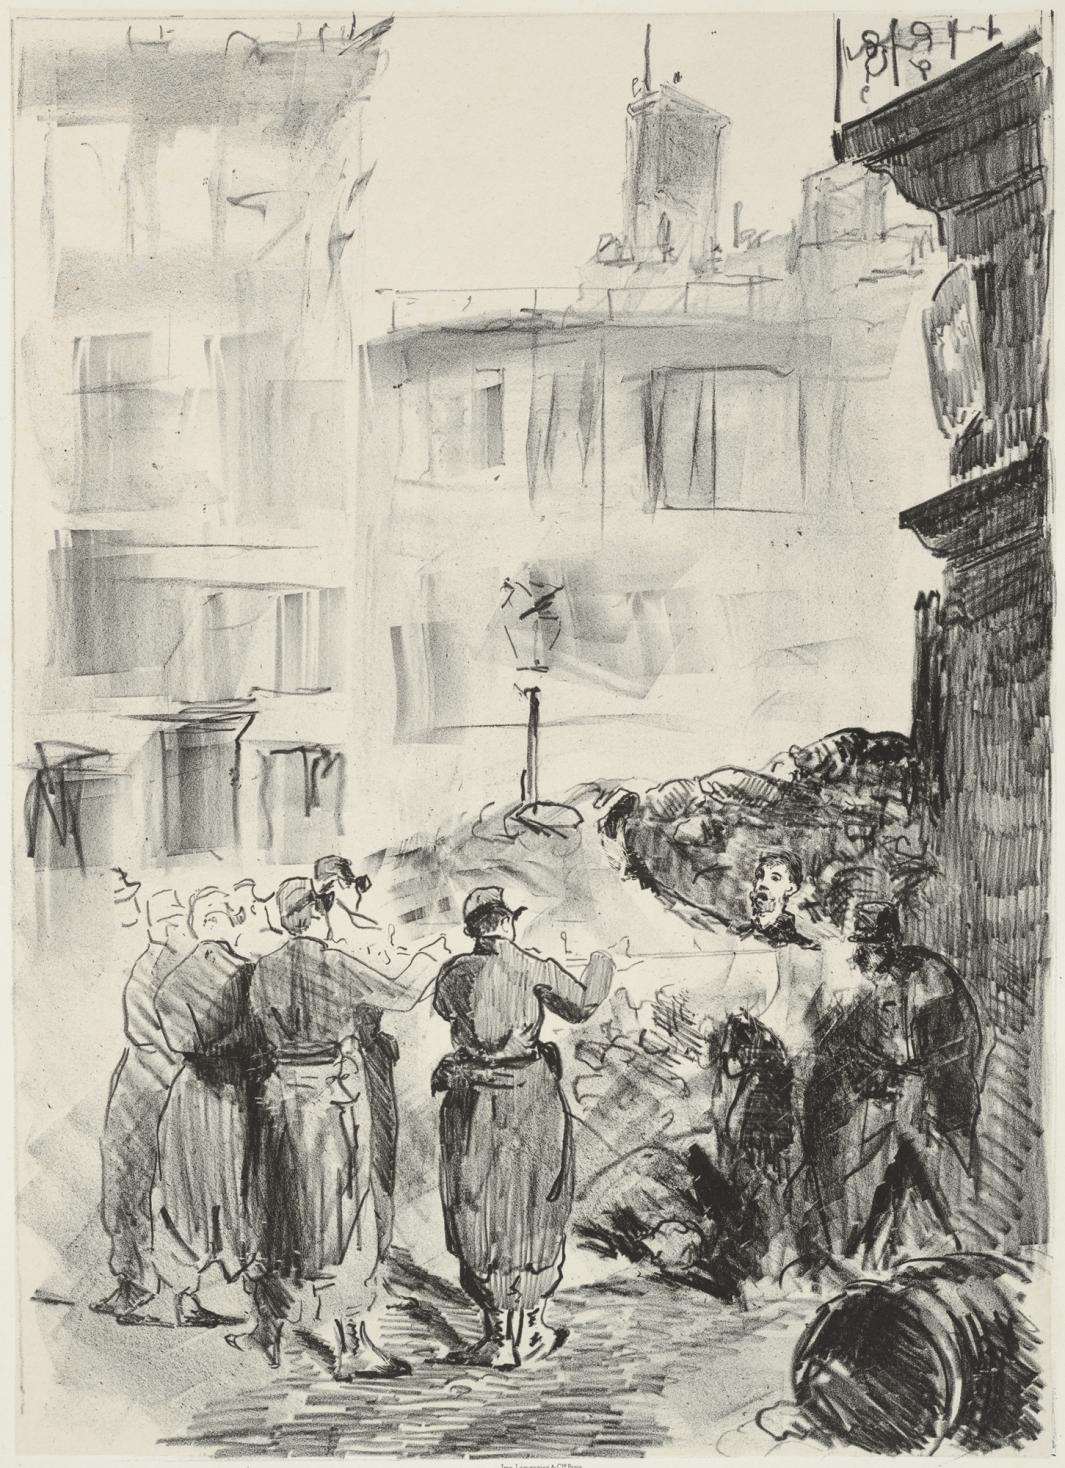 Print of men in uniform firing guns at men near a barricade in a city